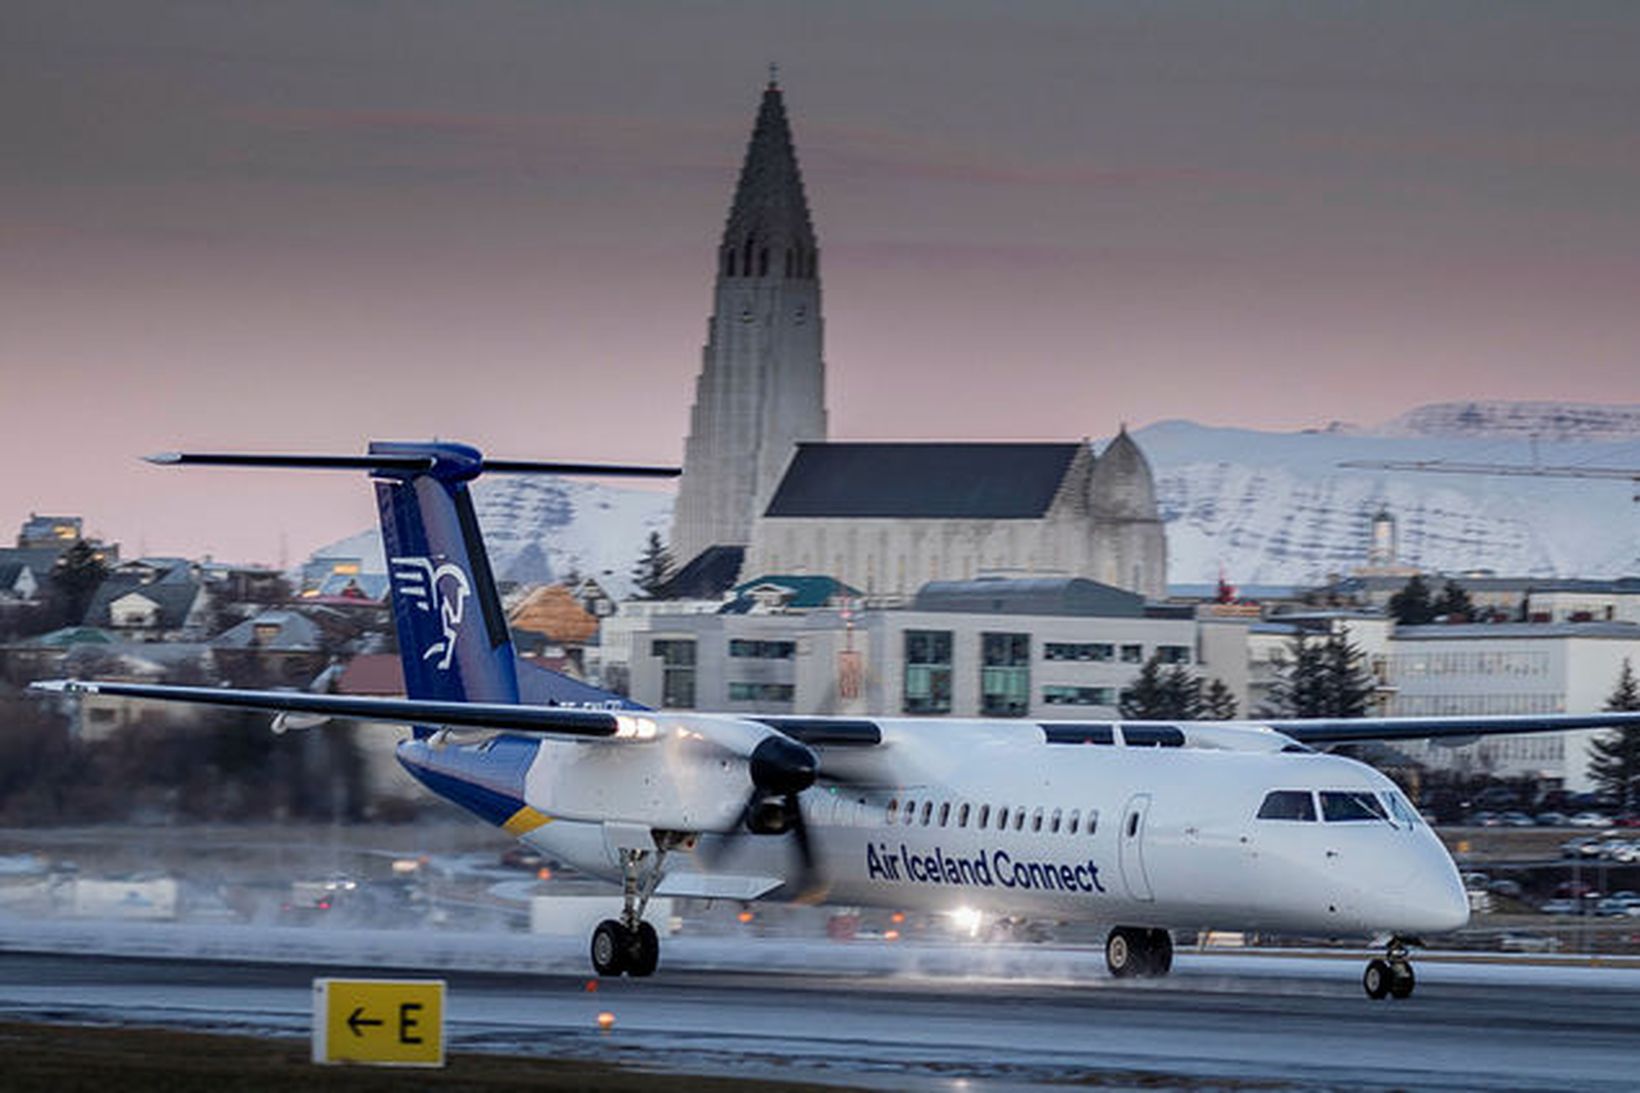 Vél Air Iceland Connect lendir í Reykjavík. Mynd úr safni.